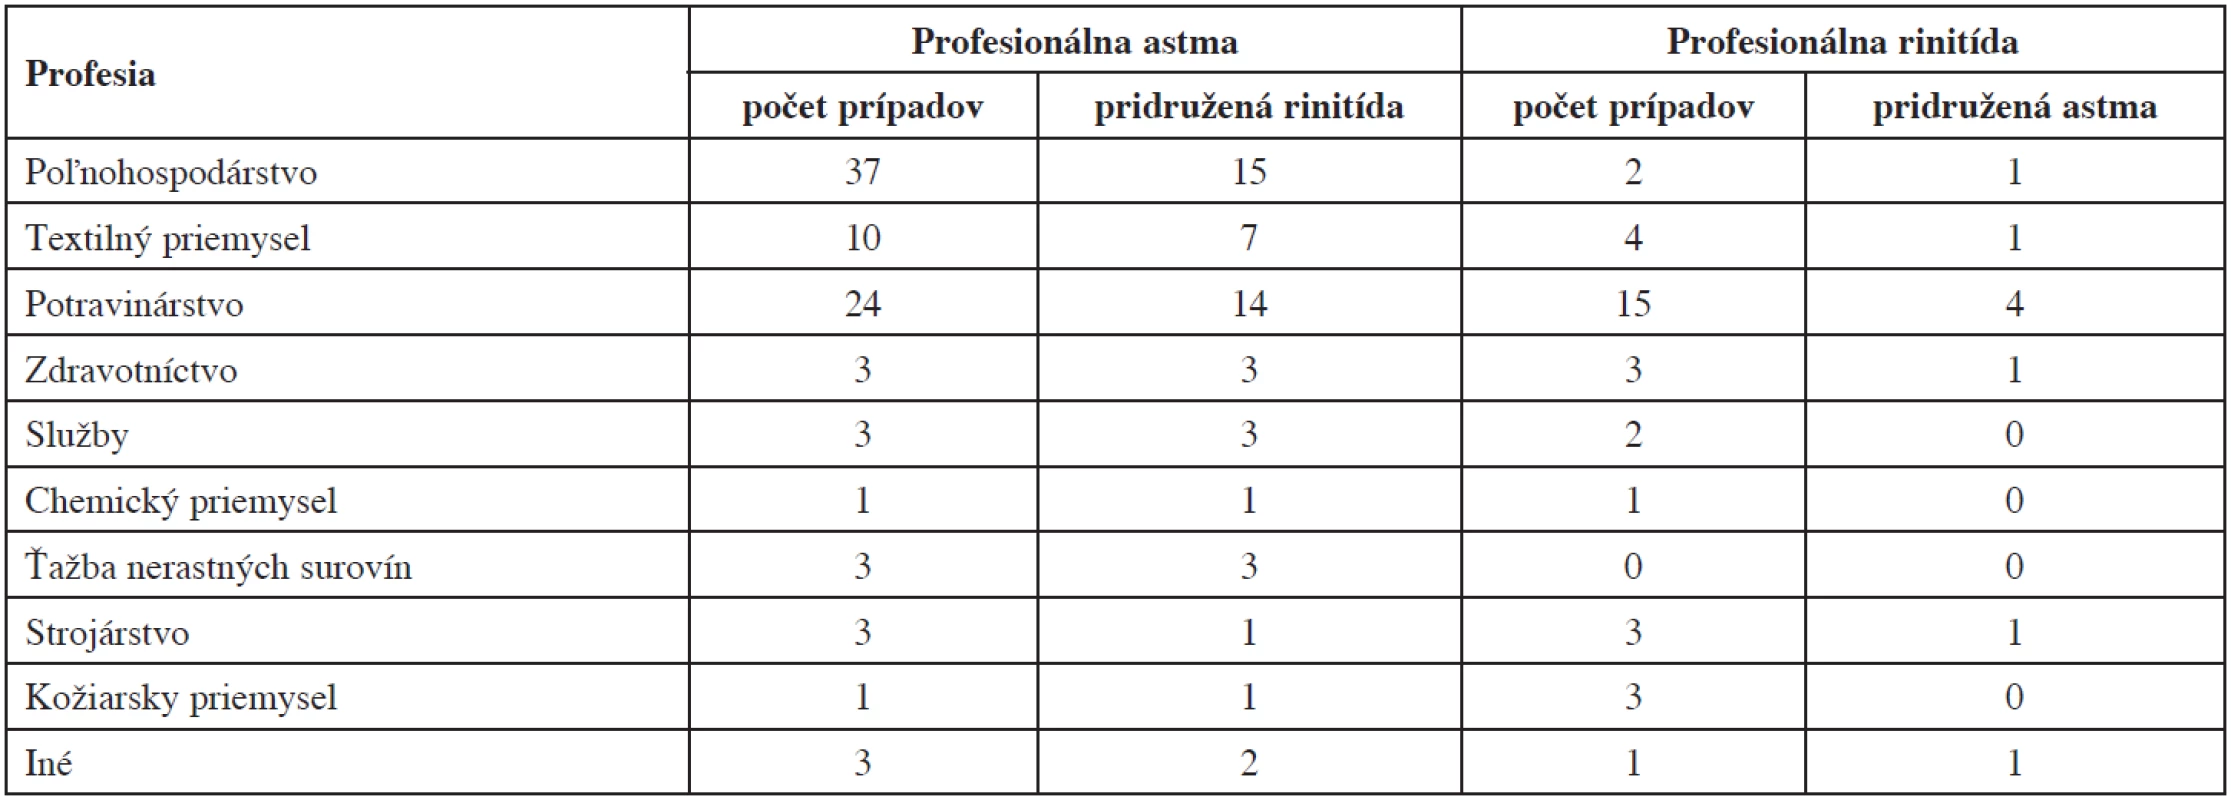 Prevalencia pridruženej rinitídy a astmy v jednotlivých skupinách podľa jednotlivých profesií